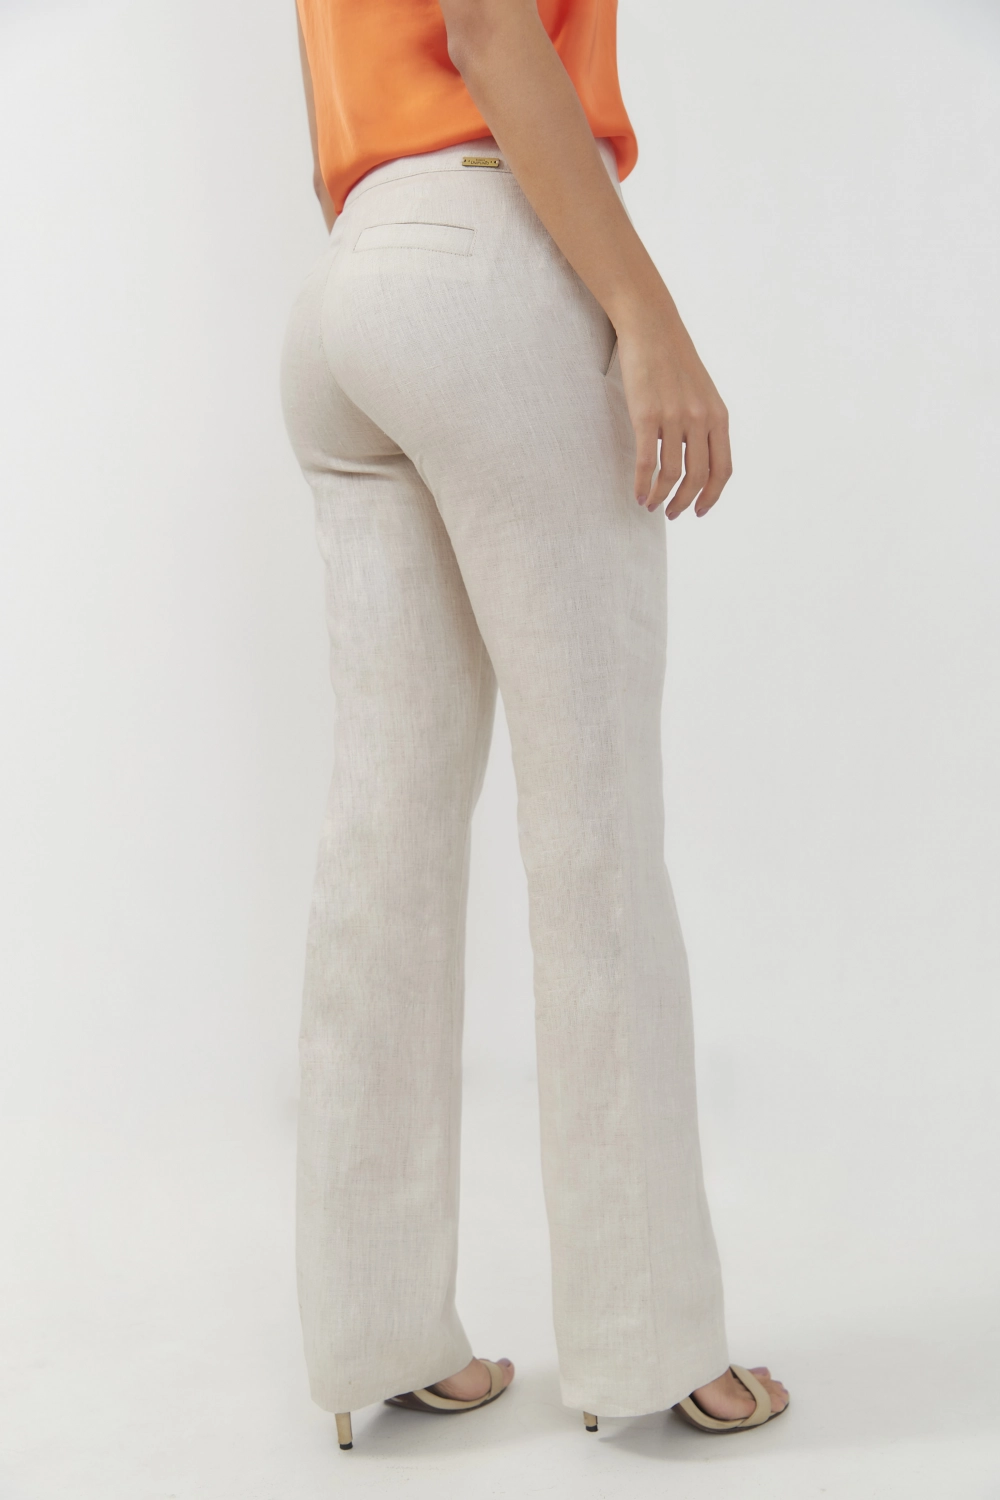 Pantalón básico slim en lino tiro-medio. Natural talla 10